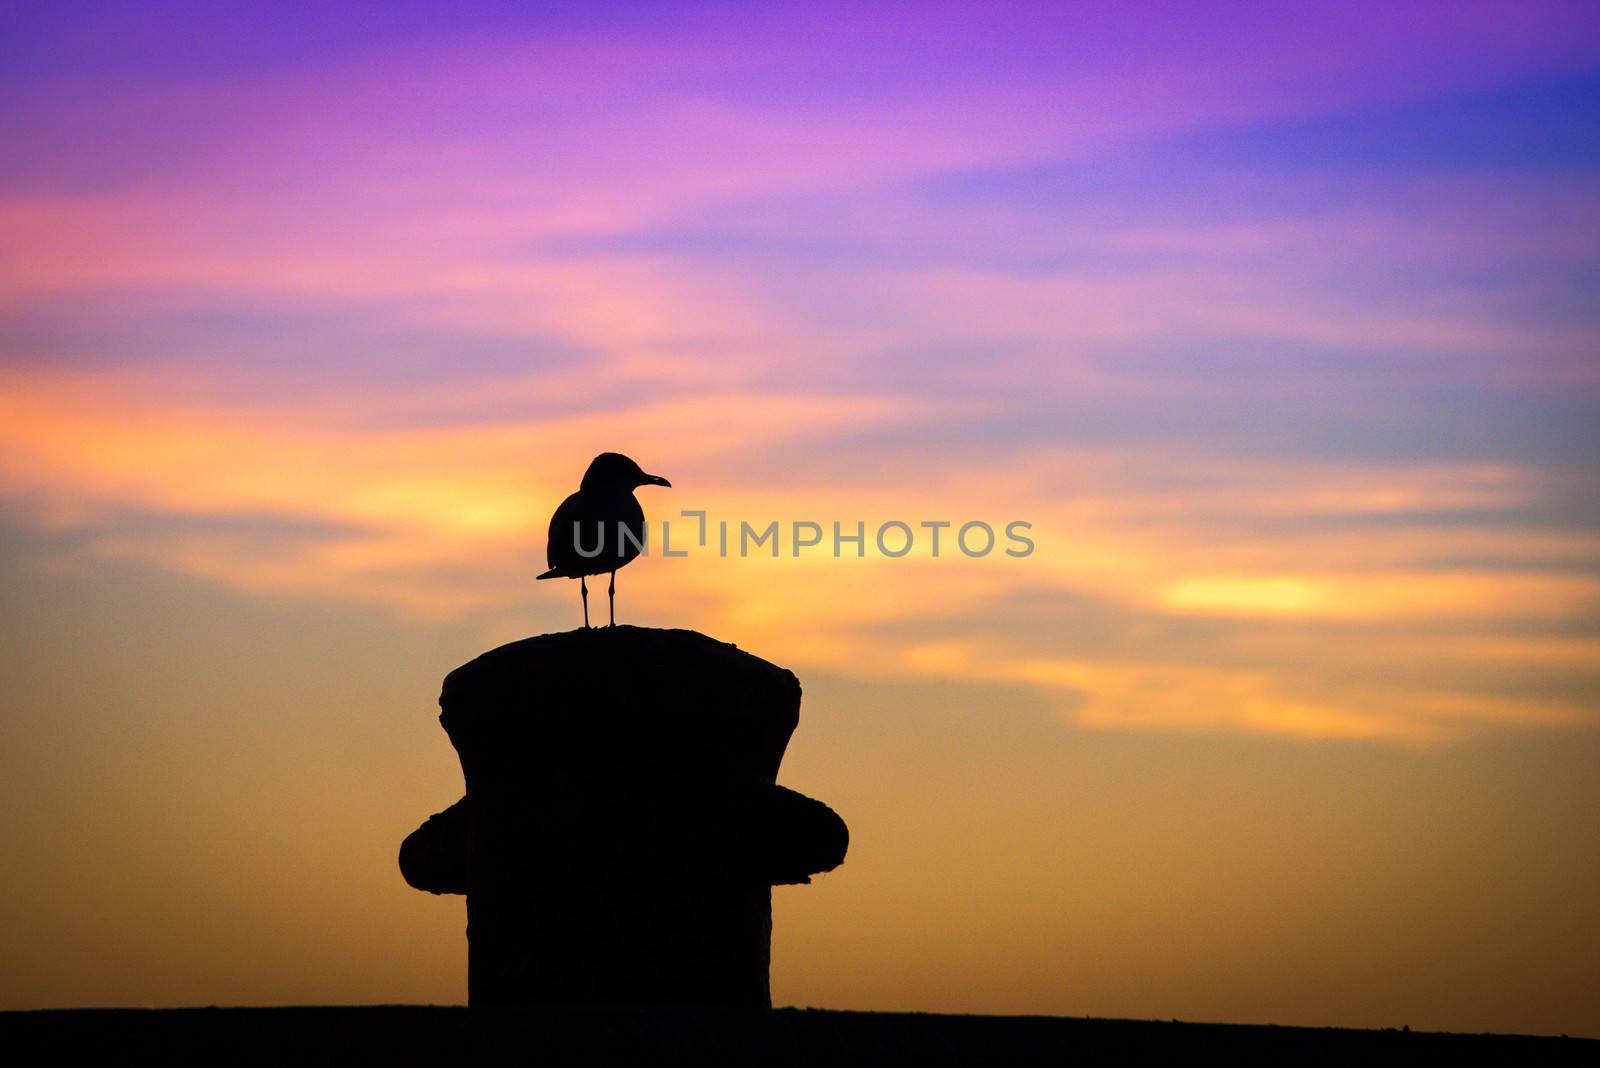 Bird at sunset by CelsoDiniz